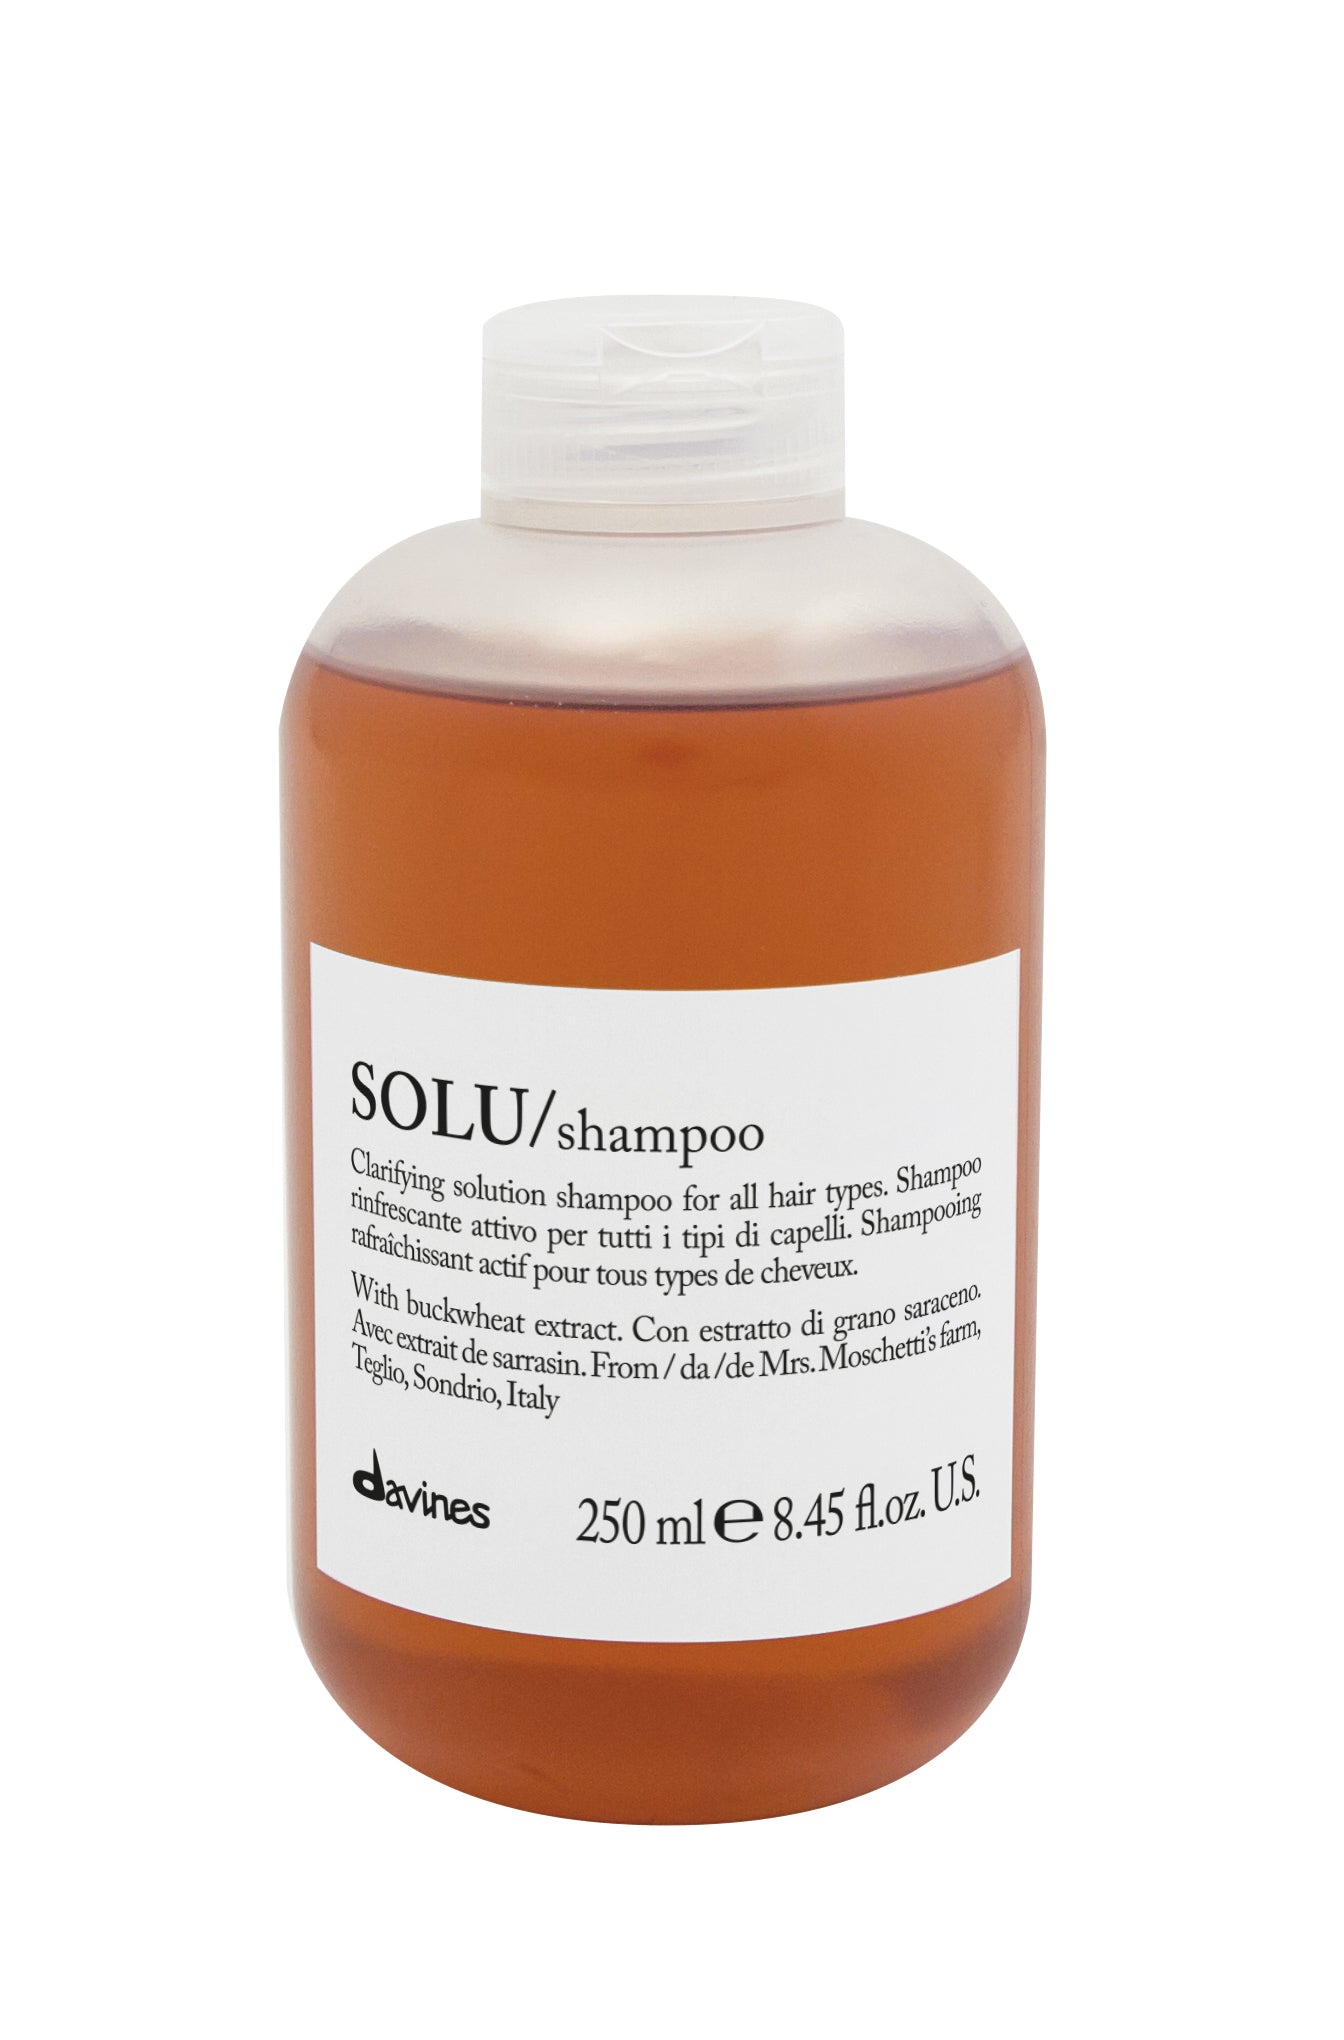 SOLU shampoo - aktywny szampon odświeżający